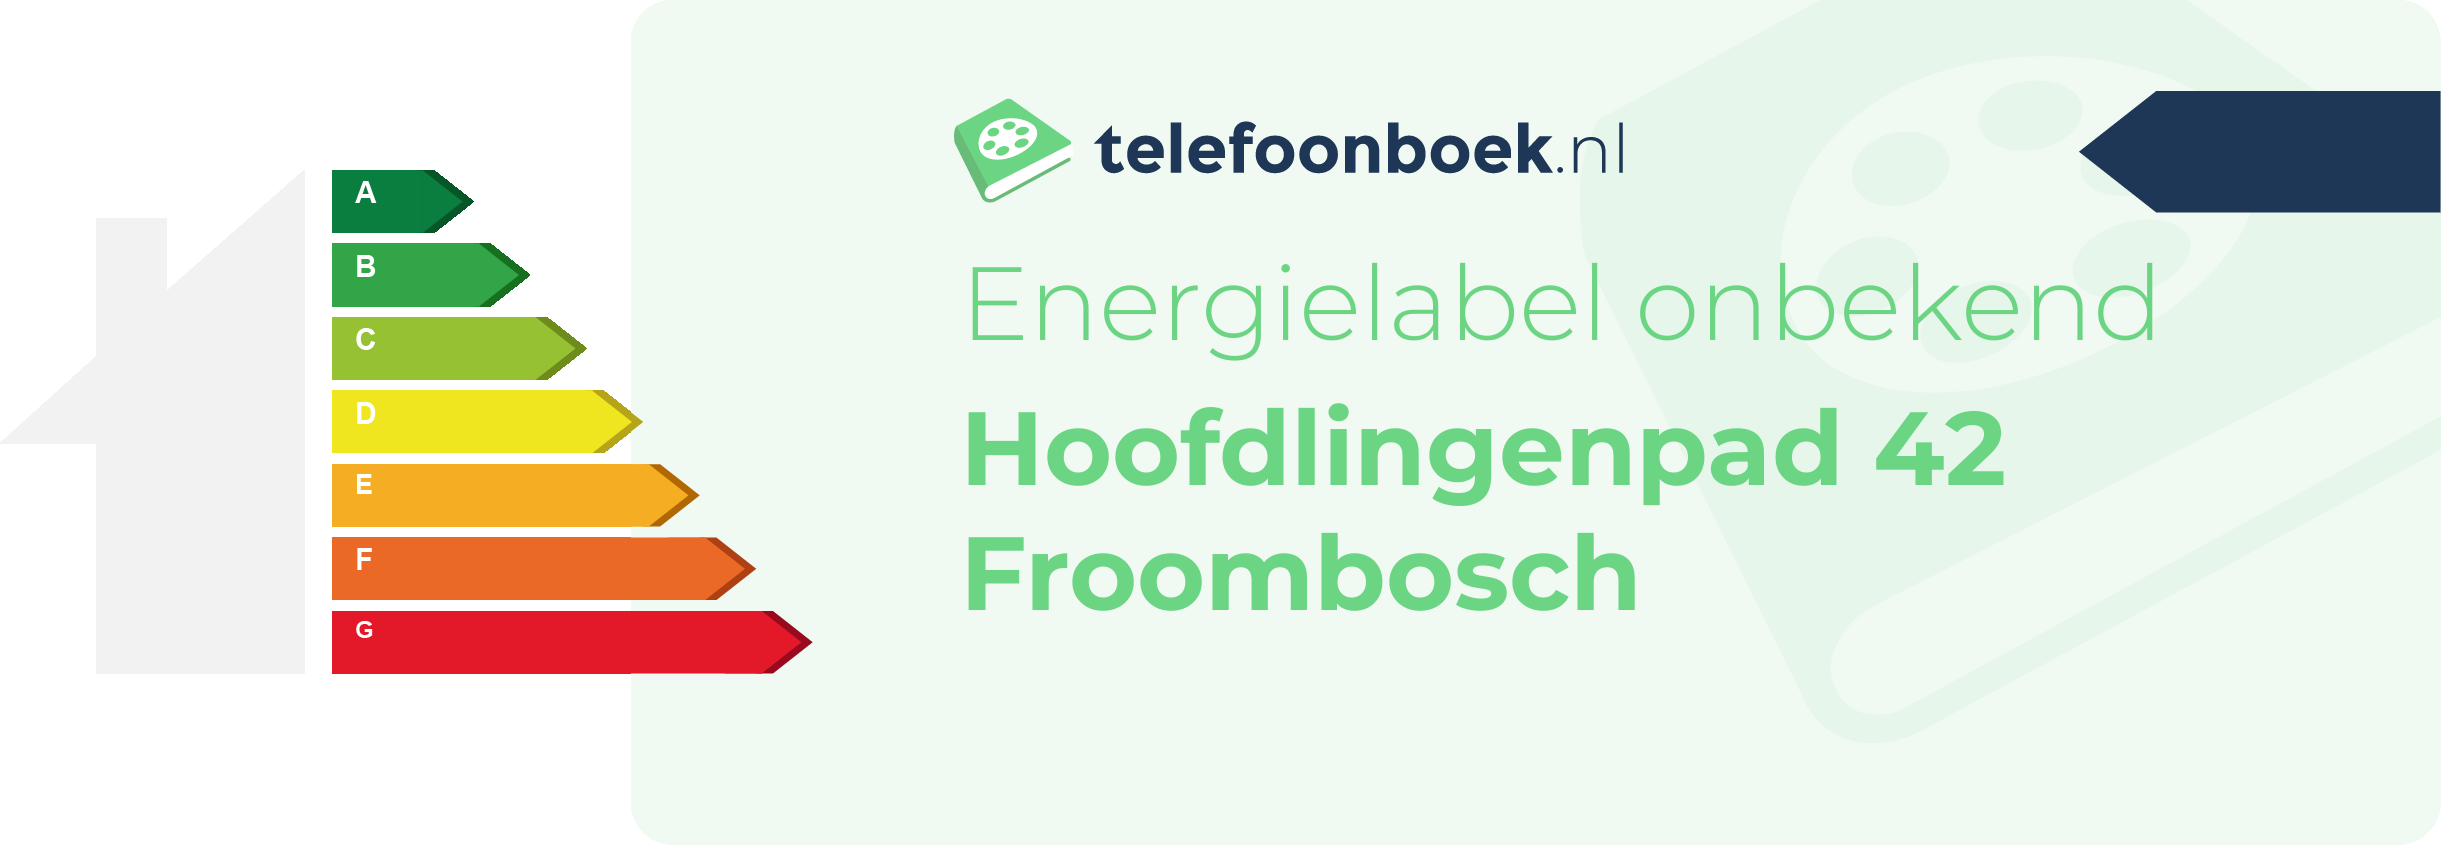 Energielabel Hoofdlingenpad 42 Froombosch